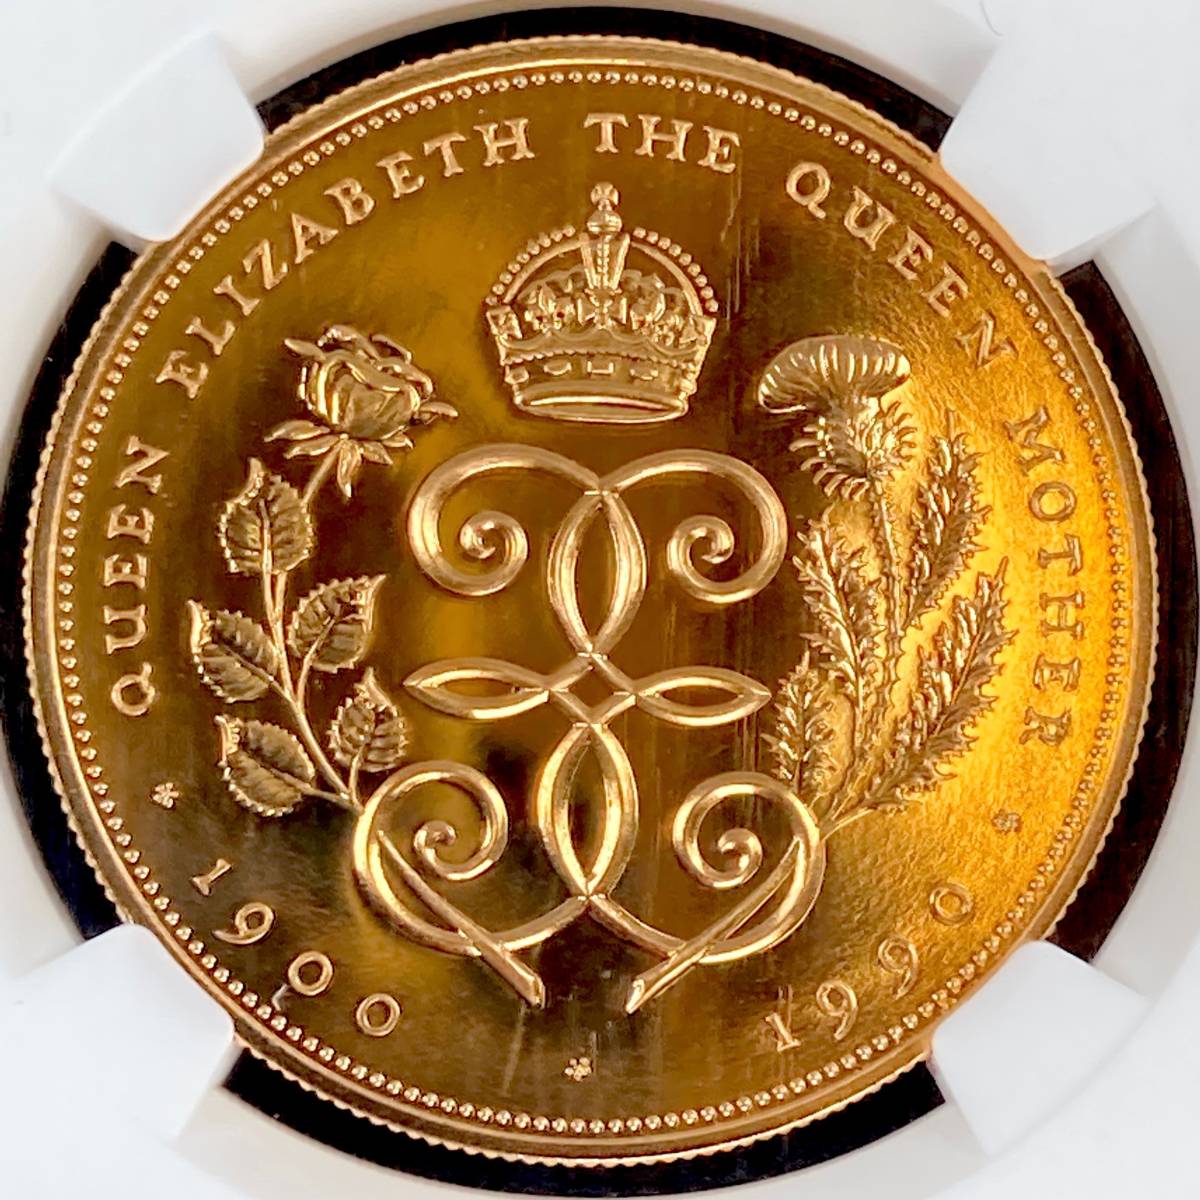 【皇太后生誕90年記念】1990年 イギリス 金貨 5ポンド NGC PF69UC 準最高鑑定 エリザベス アンティーク モダンコイン 英国 秀逸なデザインの画像5